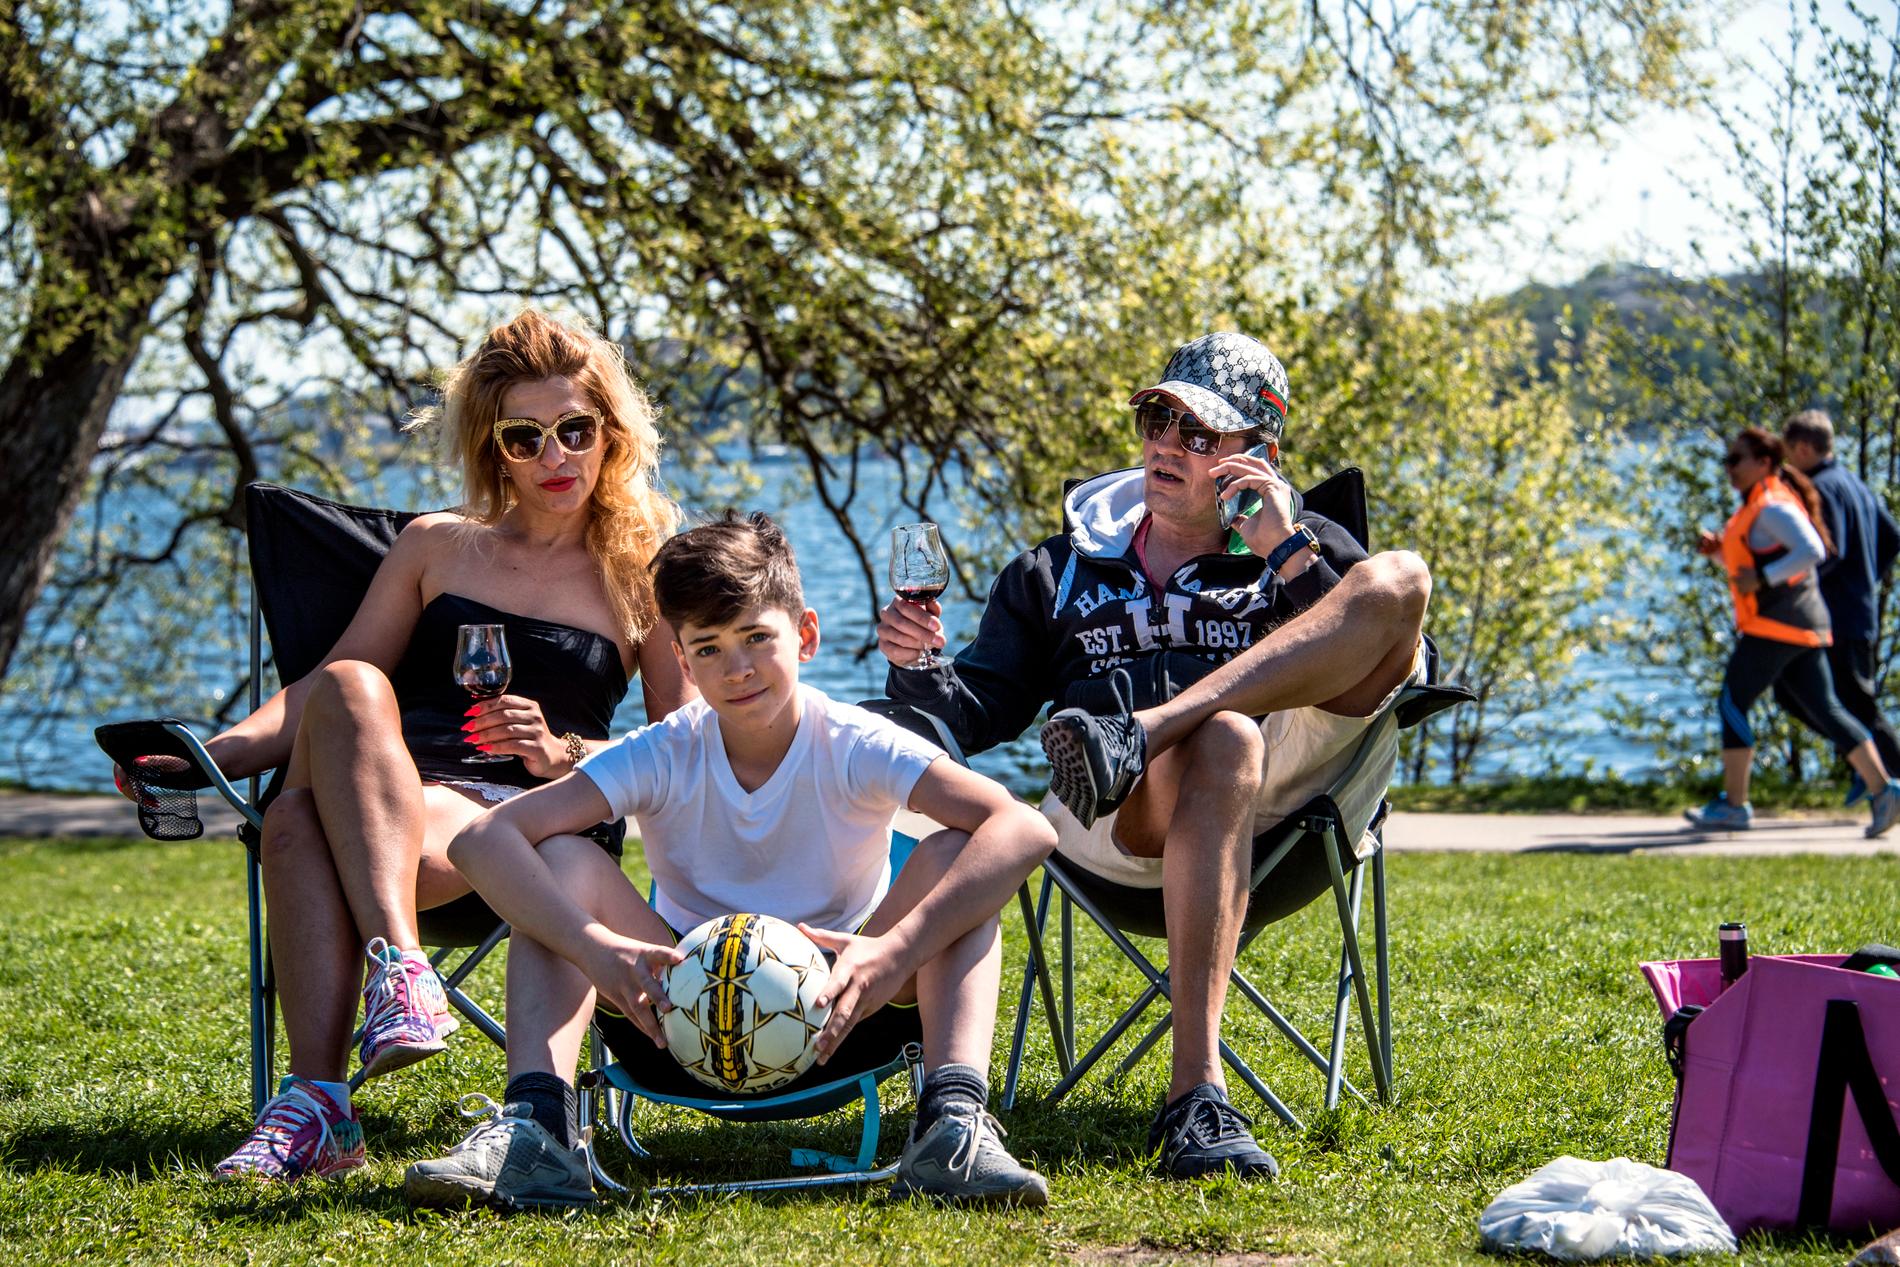 Sanja, Boris och sonen Vuk från Stockholm spenderar den soliga torsdagen i Rålambshovsparken. ”Allt med sommaren är bra men det bästa är att spela fotboll”, säger Vuk. Föräldrarnas planer är för dagen är att grilla, umgås med vänner och njuta av sommaren.